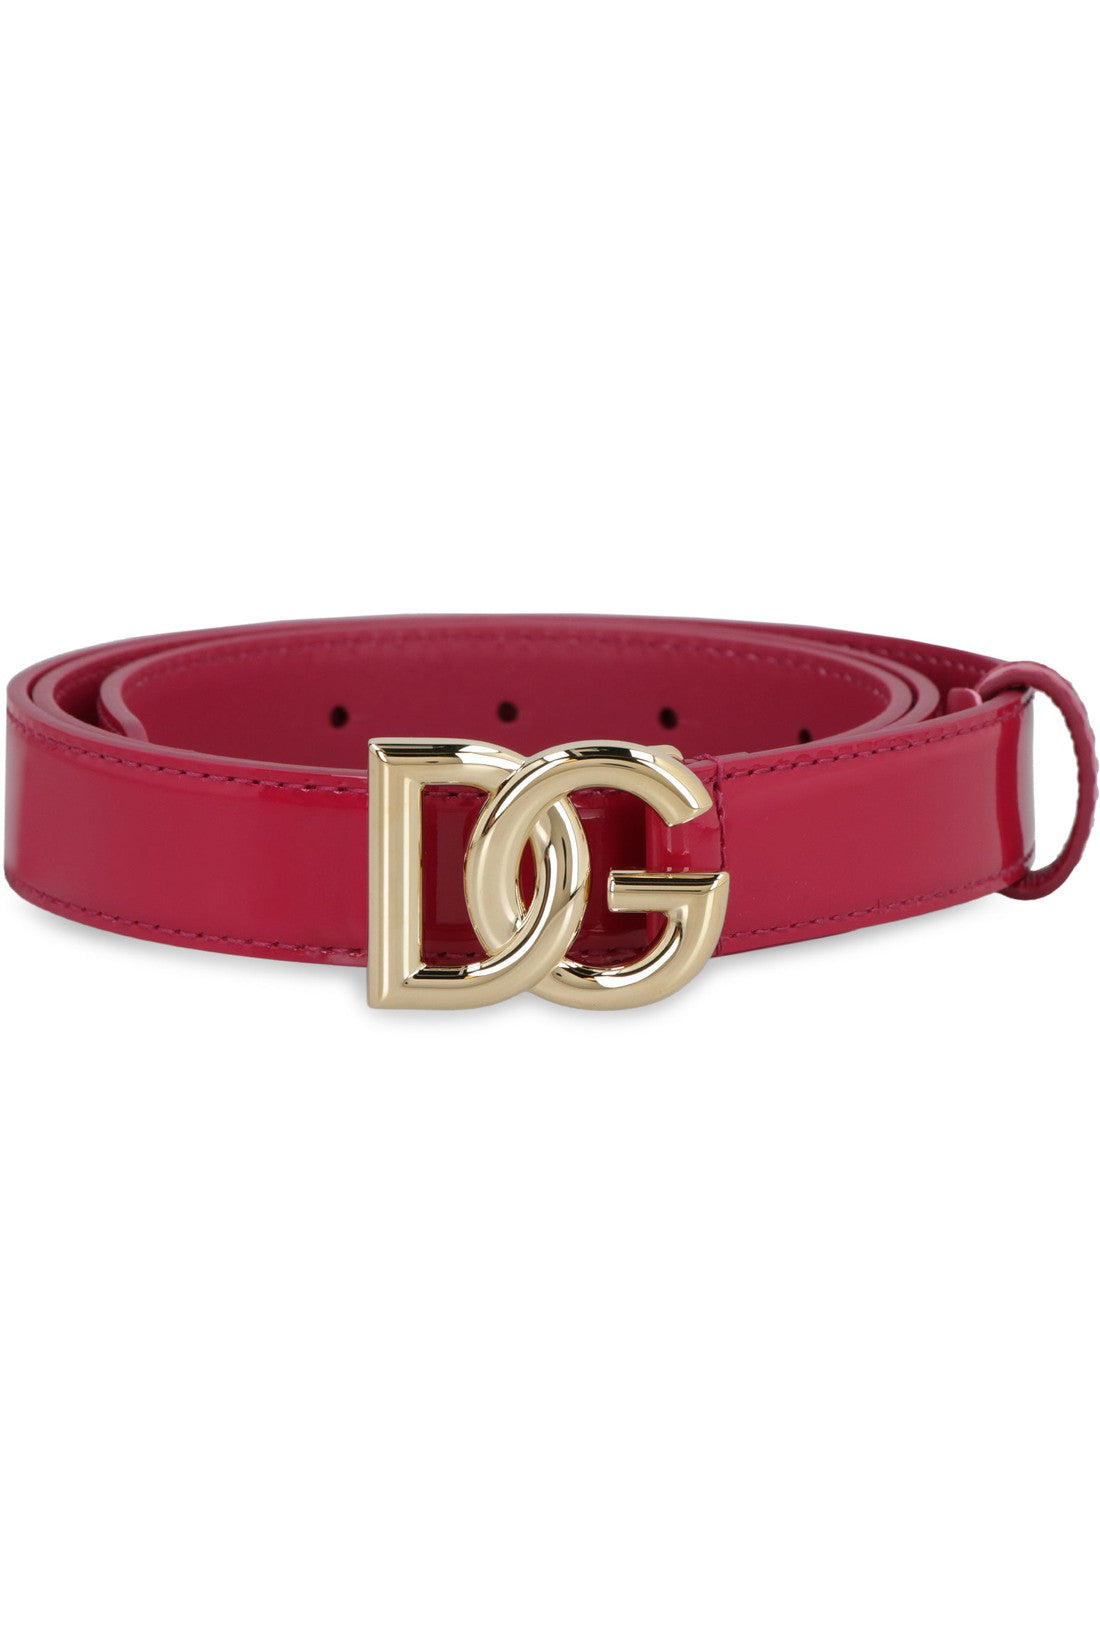 Dolce & Gabbana-OUTLET-SALE-DG buckle patent leather belt-ARCHIVIST